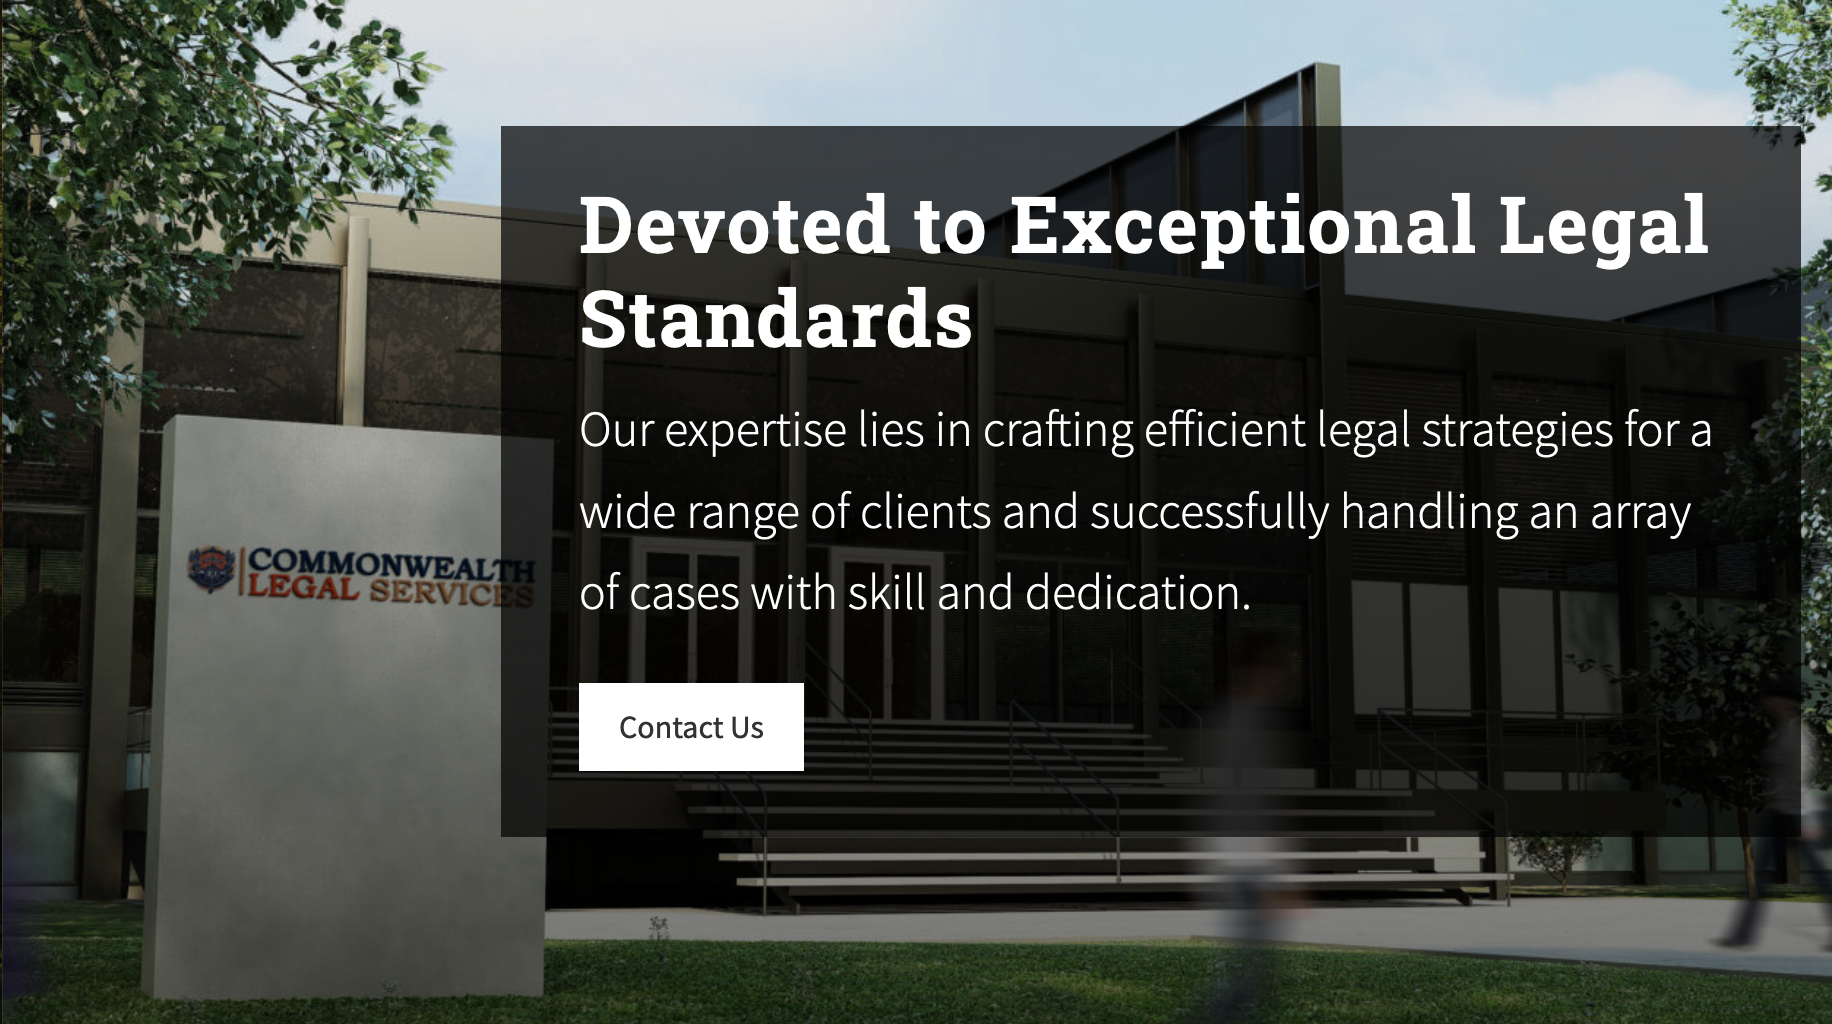 Una porción del sitio web de Commonwealth Legal Services, con cada palabra en esa oración, incluido 